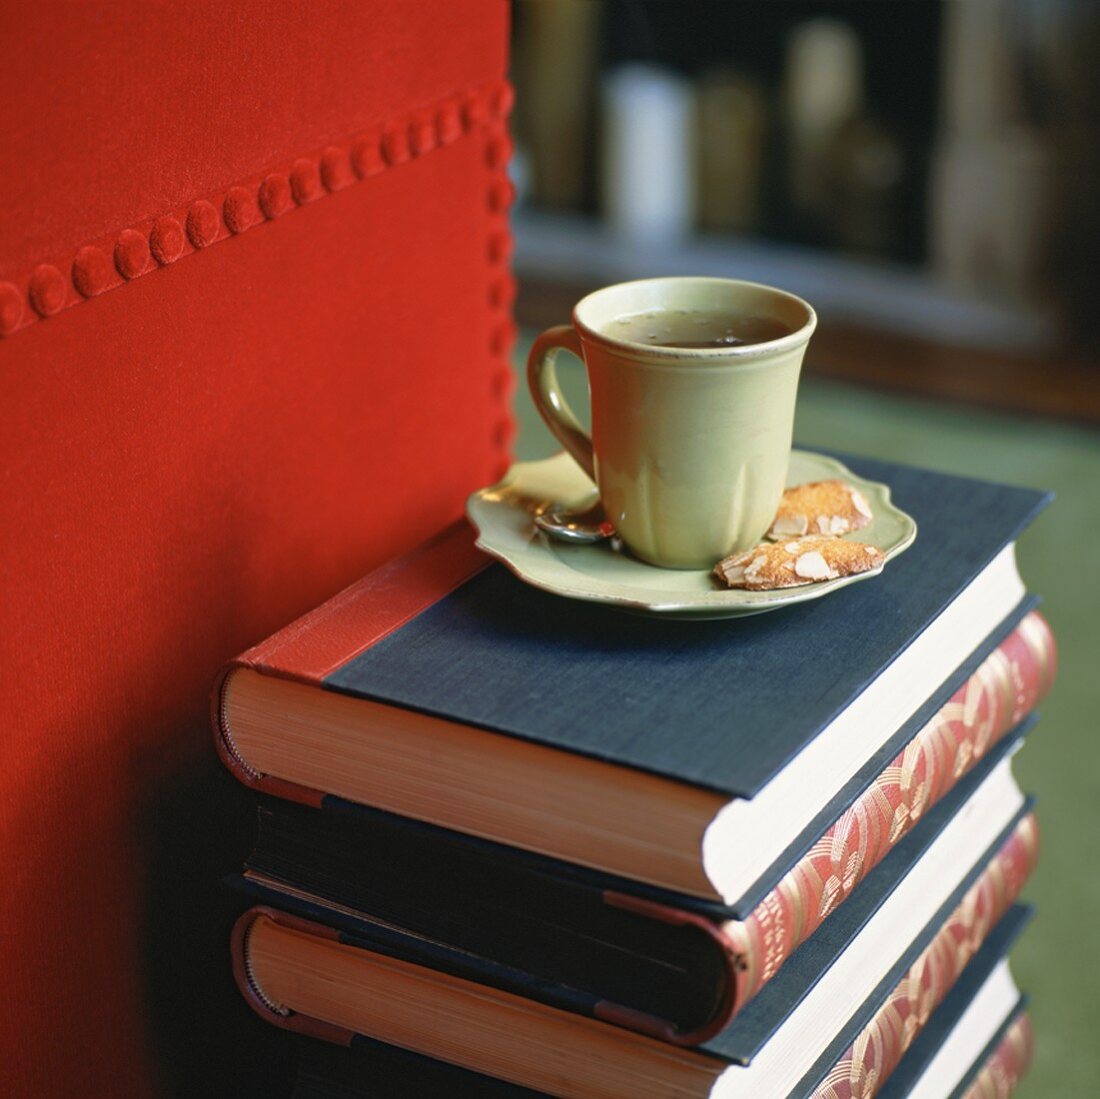 Eine grüne Teetasse mit Mandelgebäck auf einem Bücherstapel